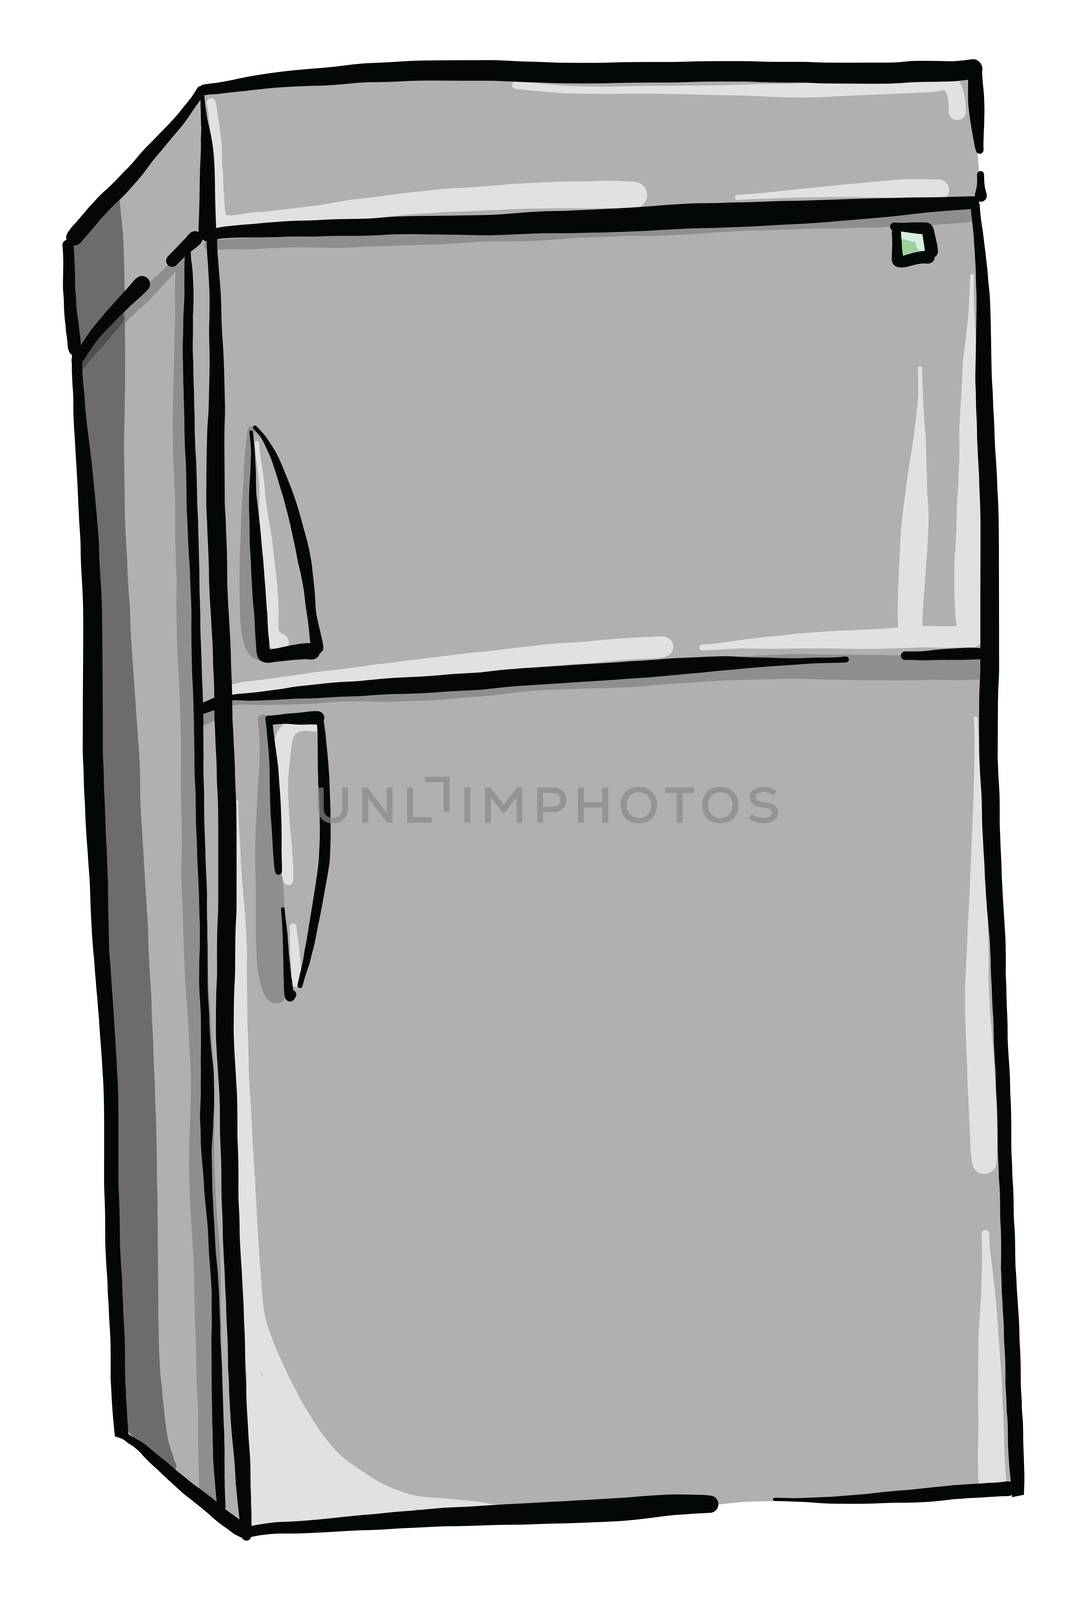 Gray fridge , illustration, vector on white background